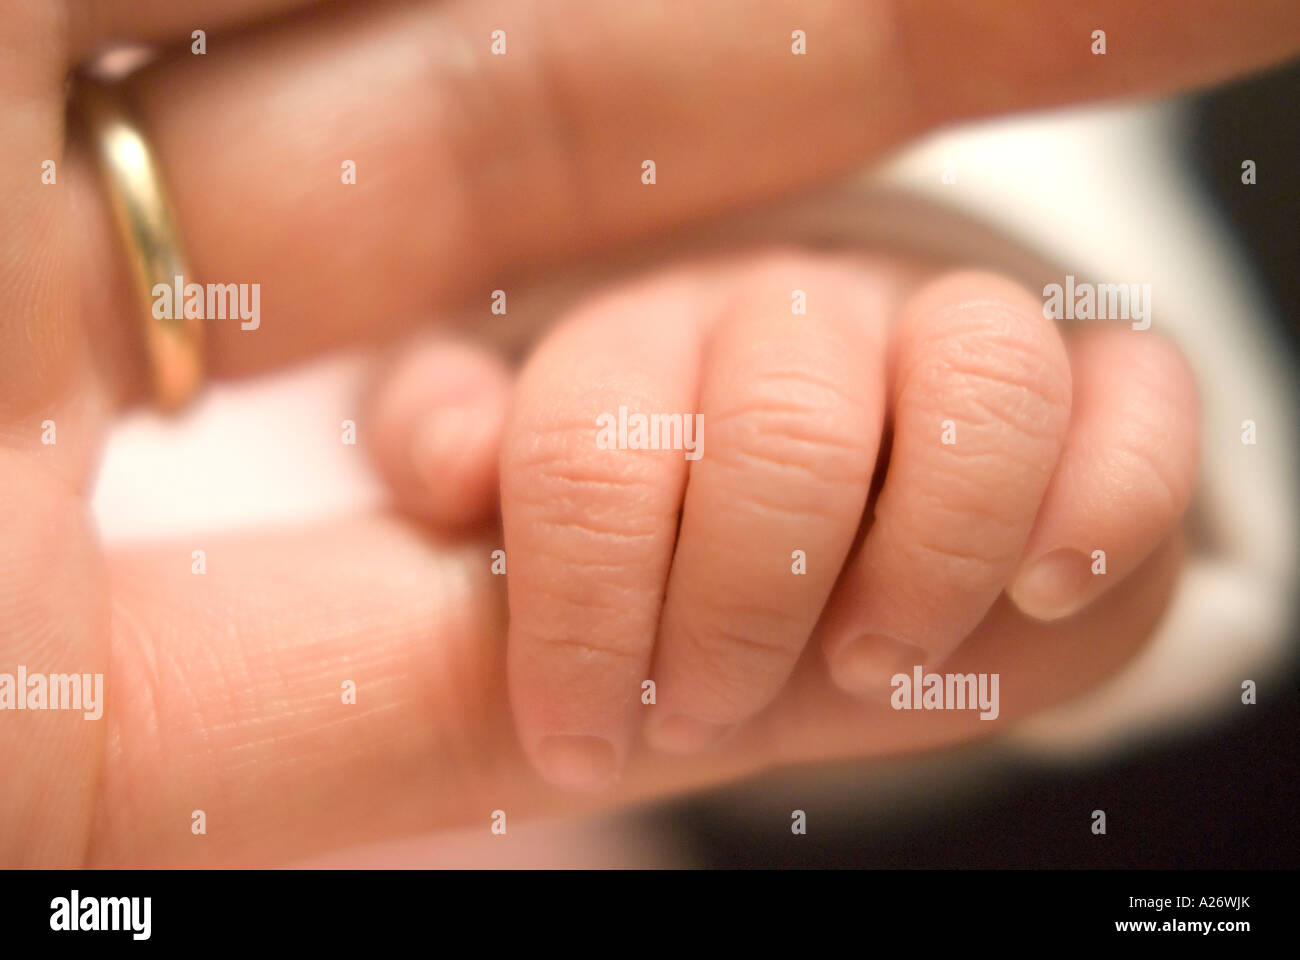 Petite main et doigts d'un nouveau-né qui tient la main de son père. Anneau de mariage Banque D'Images